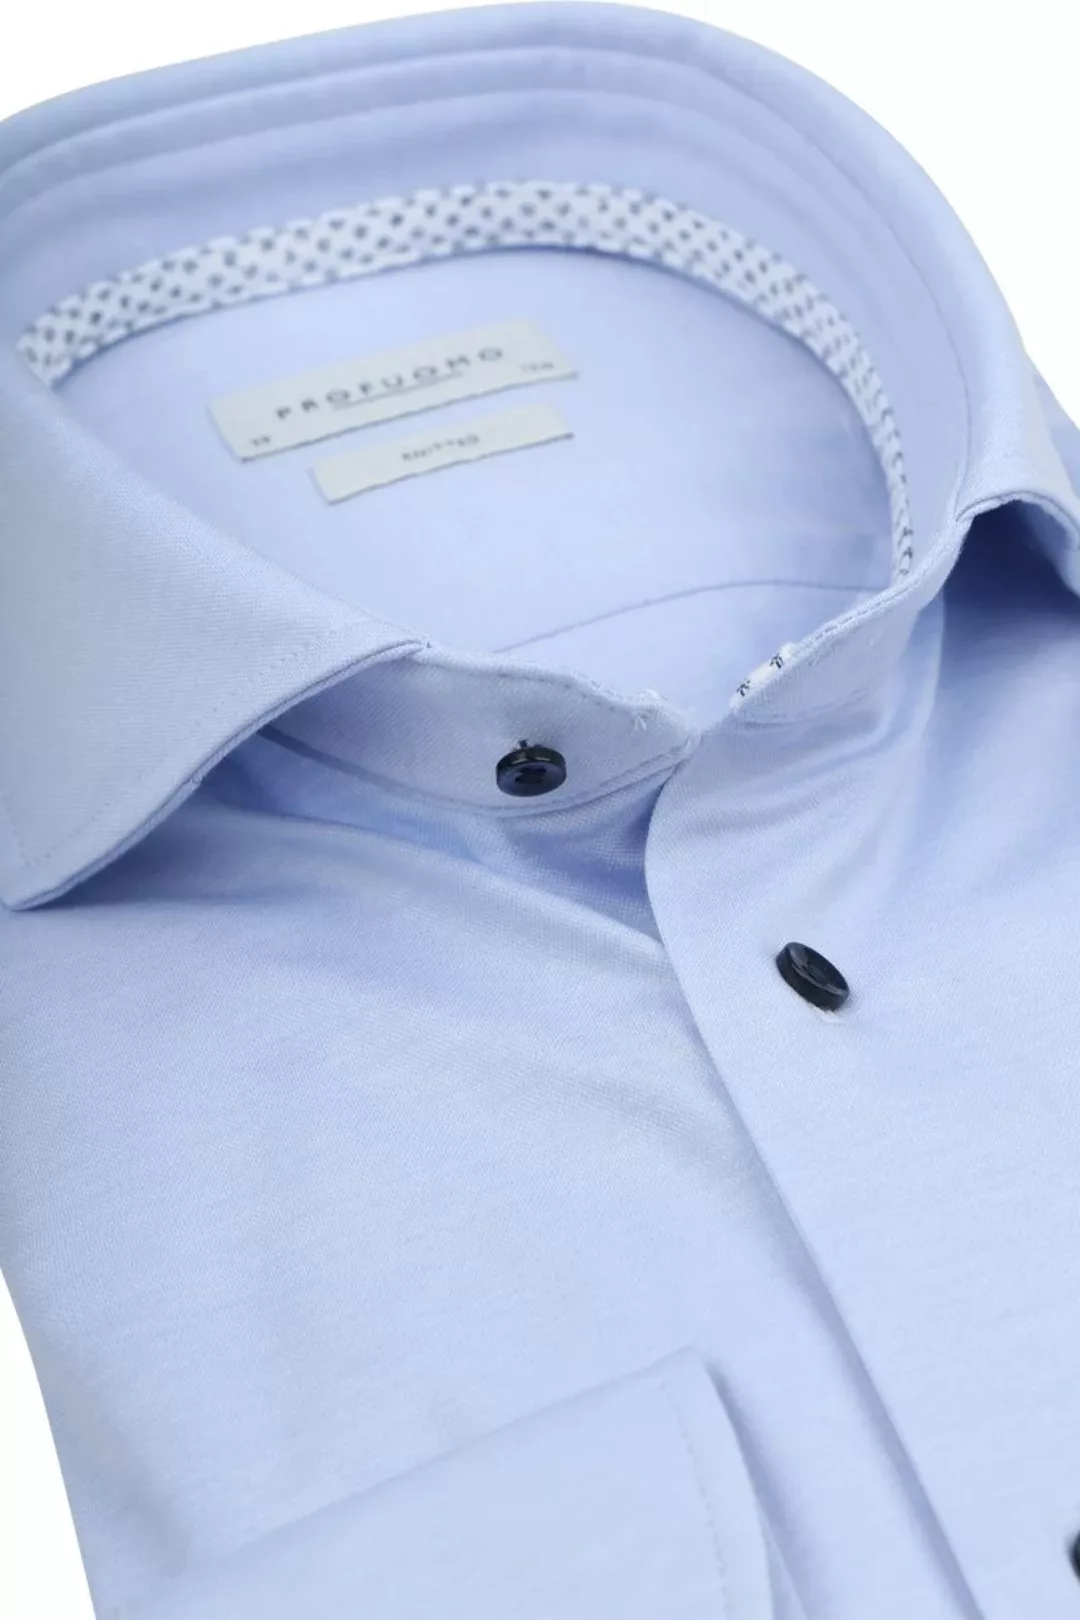 Profuomo Hemd Knitted Slim Fit Hellblau Melange - Größe 42 günstig online kaufen